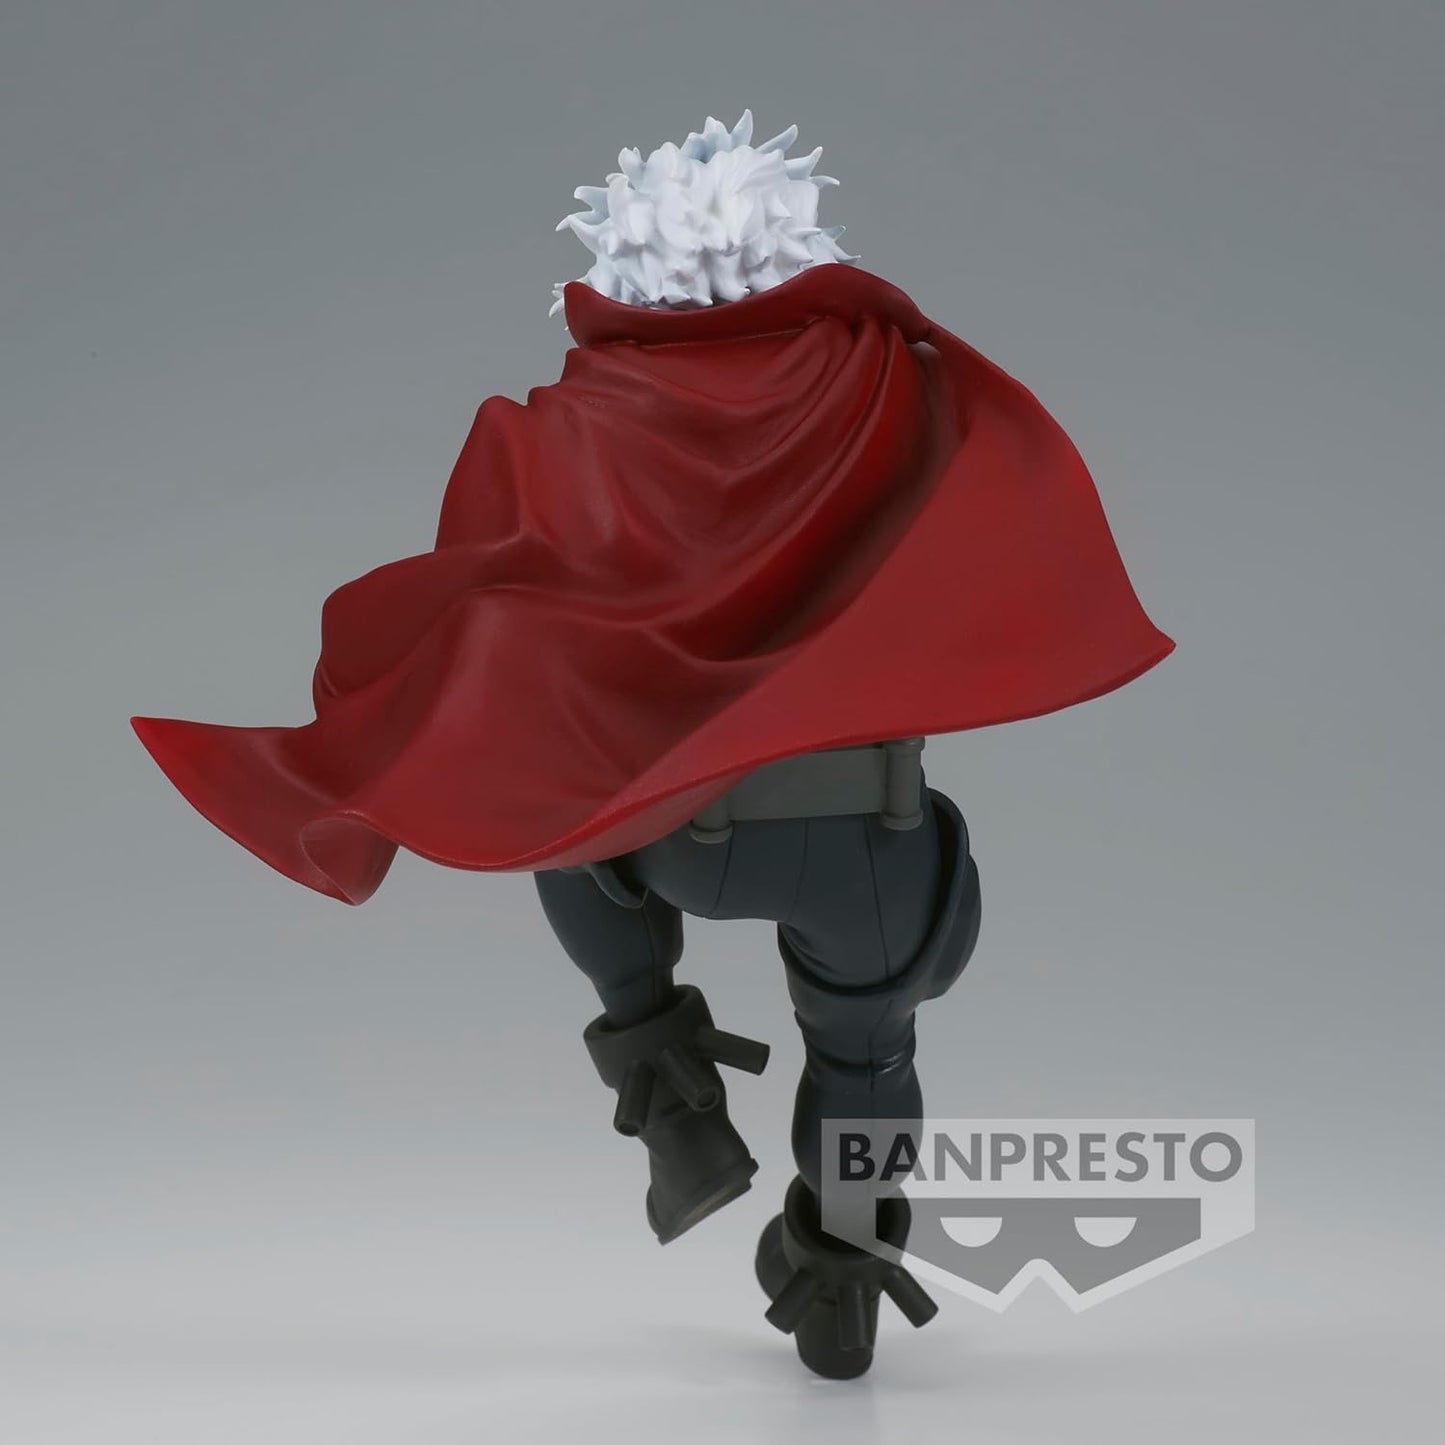 Banpresto - My Hero Academia - Tomura Shigaraki, Bandai Spirits The Evil Villains Figure